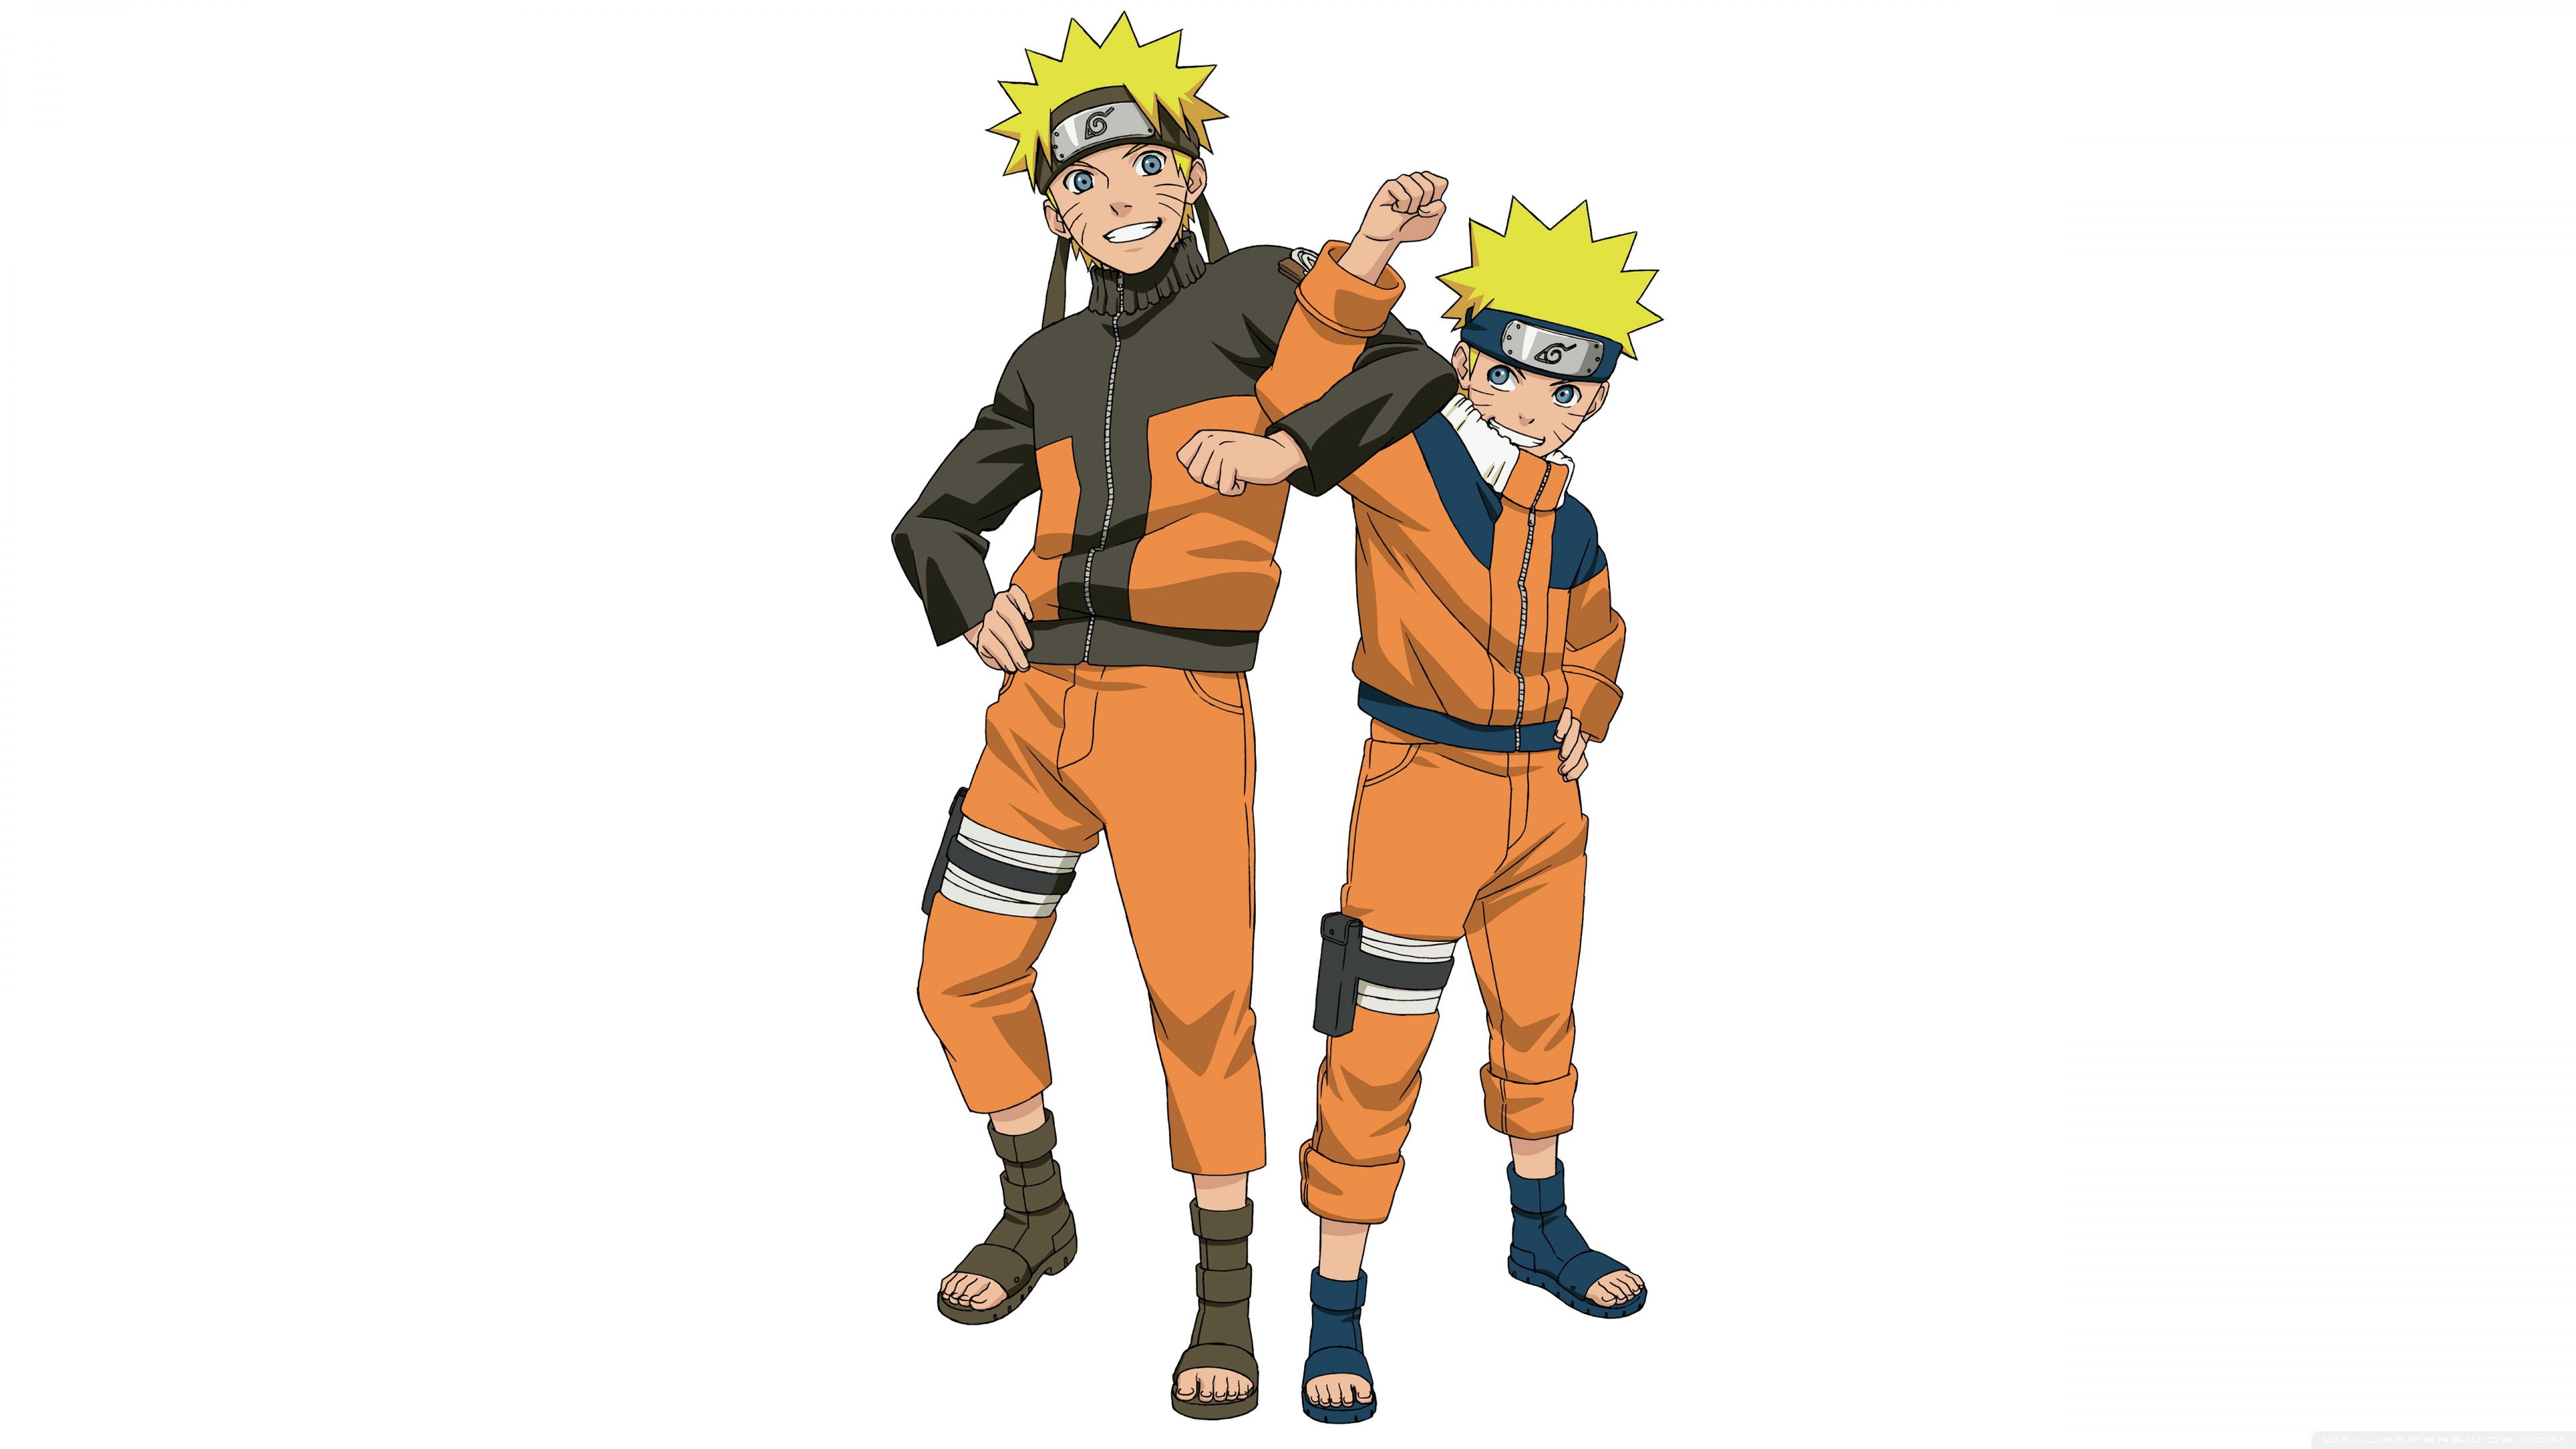 Naruto Anime 4K7807611935 - Naruto Anime 4K - Naruto, Anime